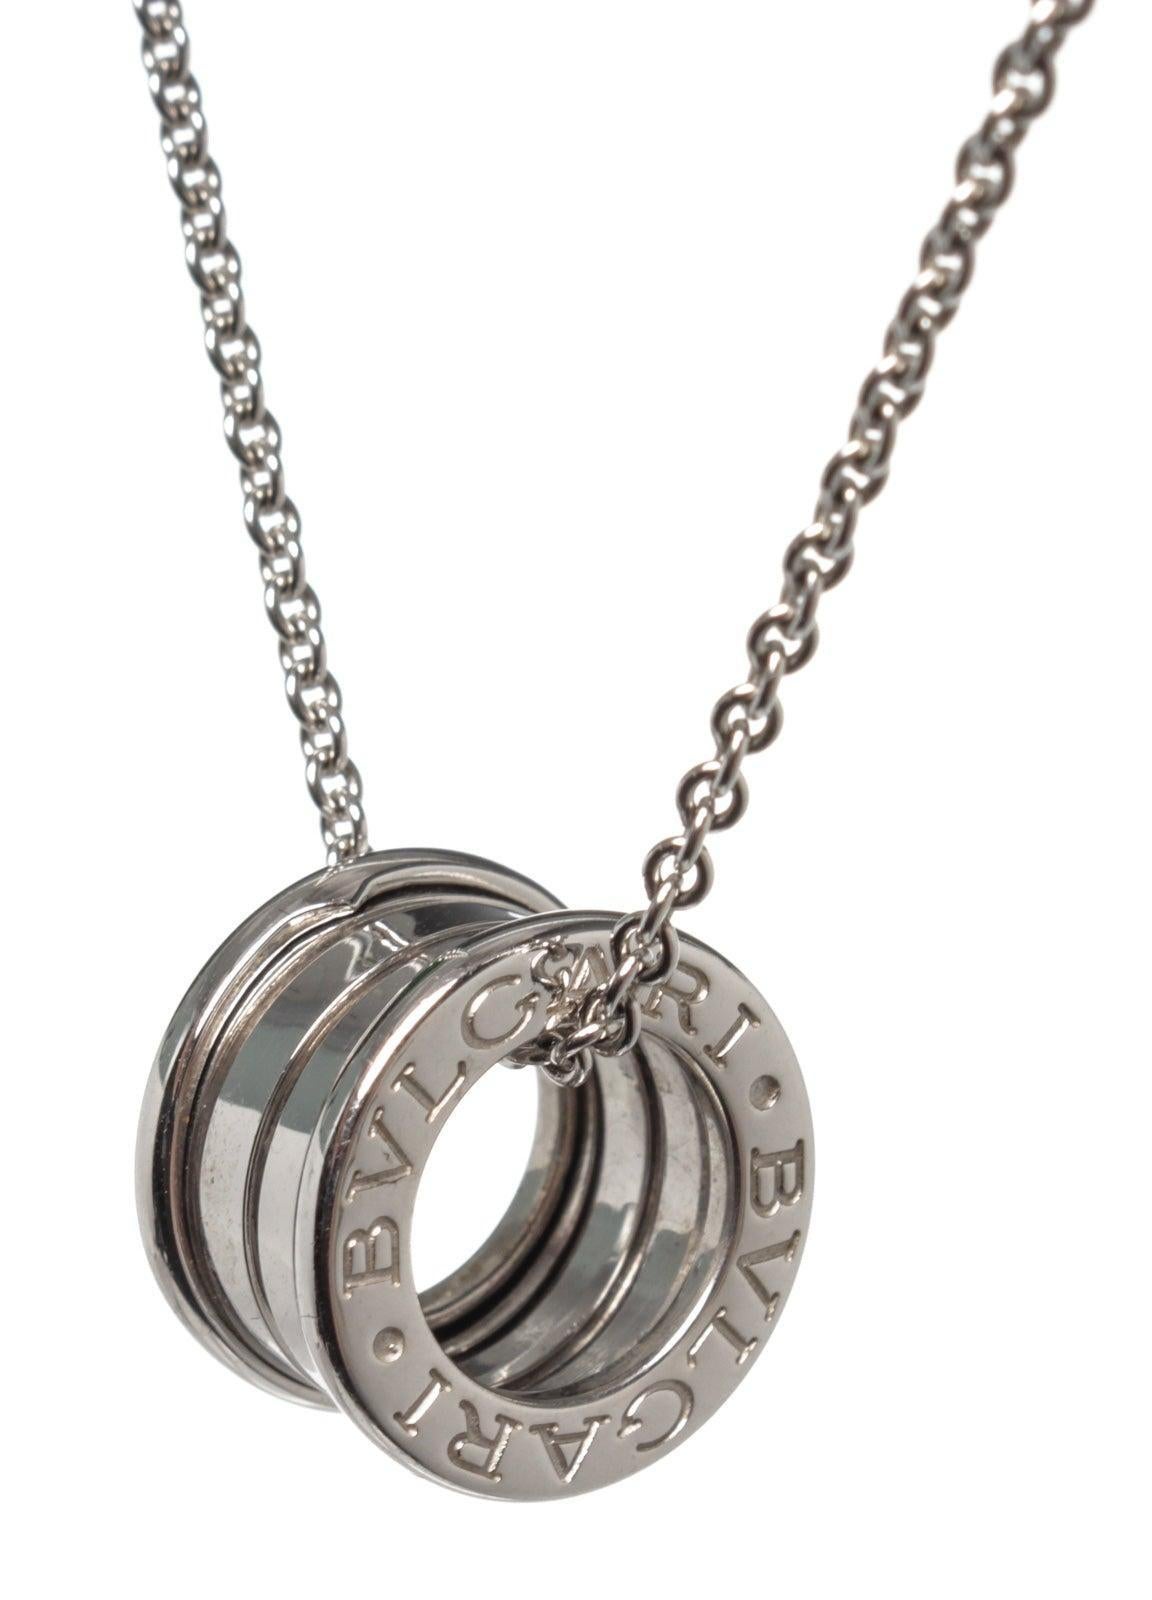 Bvlgari Silver B.Zero 1 Pendant Necklace with silver-tone hardware.

50055MSC